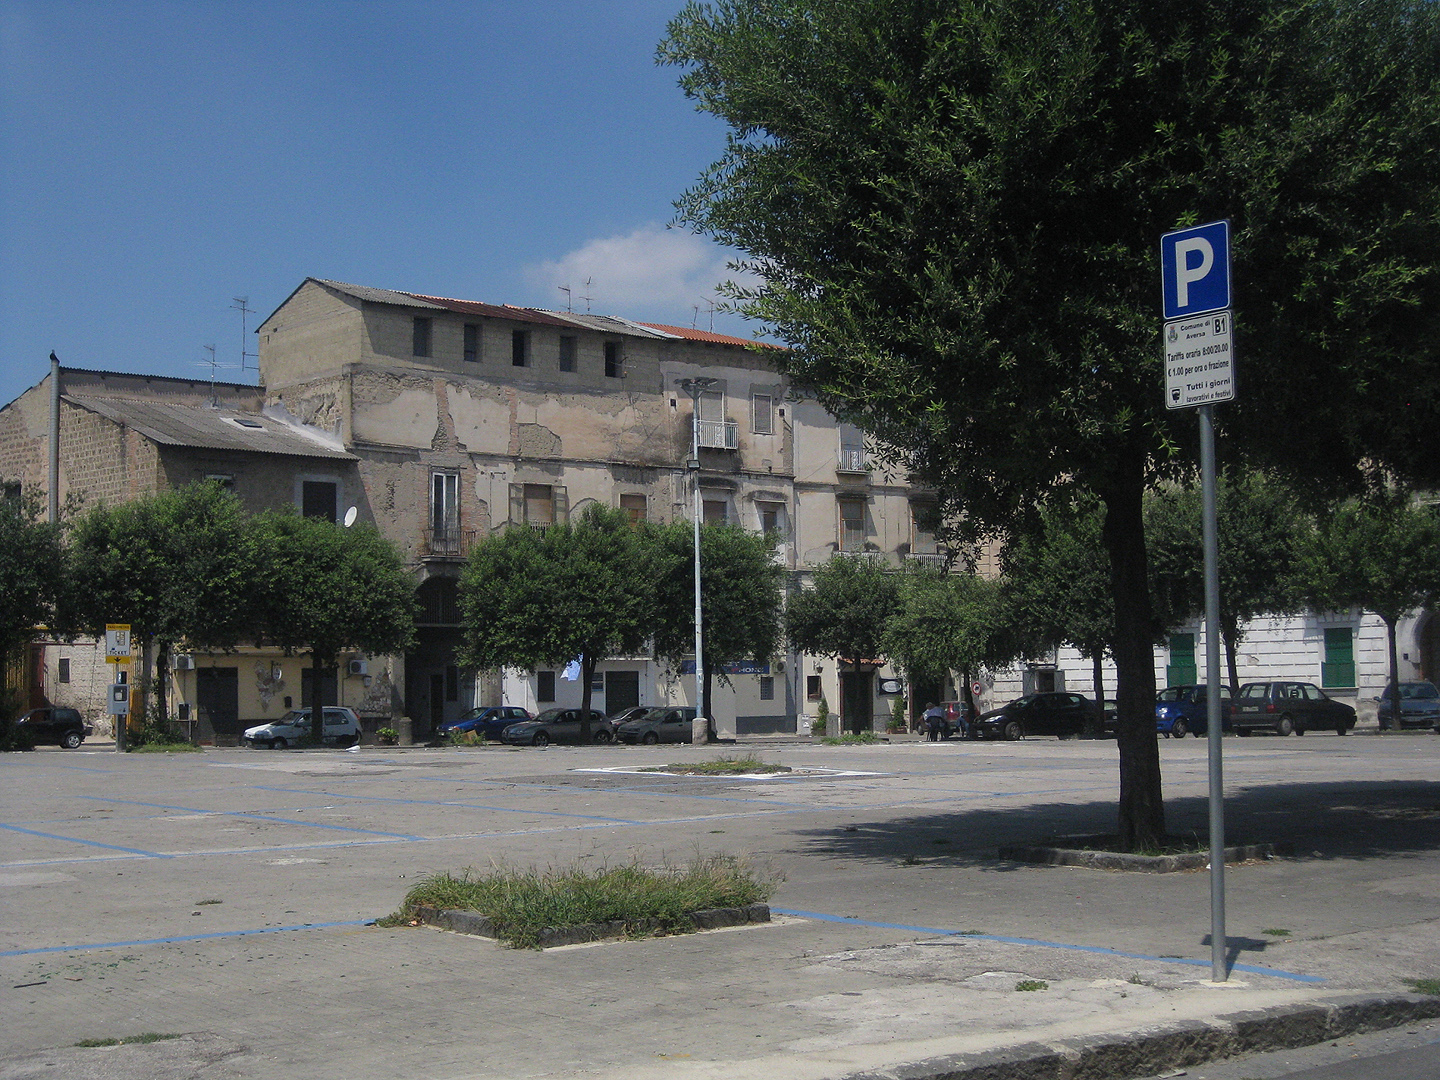 Piazza Guglielmo Marconi, Aversa, Campani, Itali; Piazza Guglielmo Marconi, Aversa, Campania, Italy